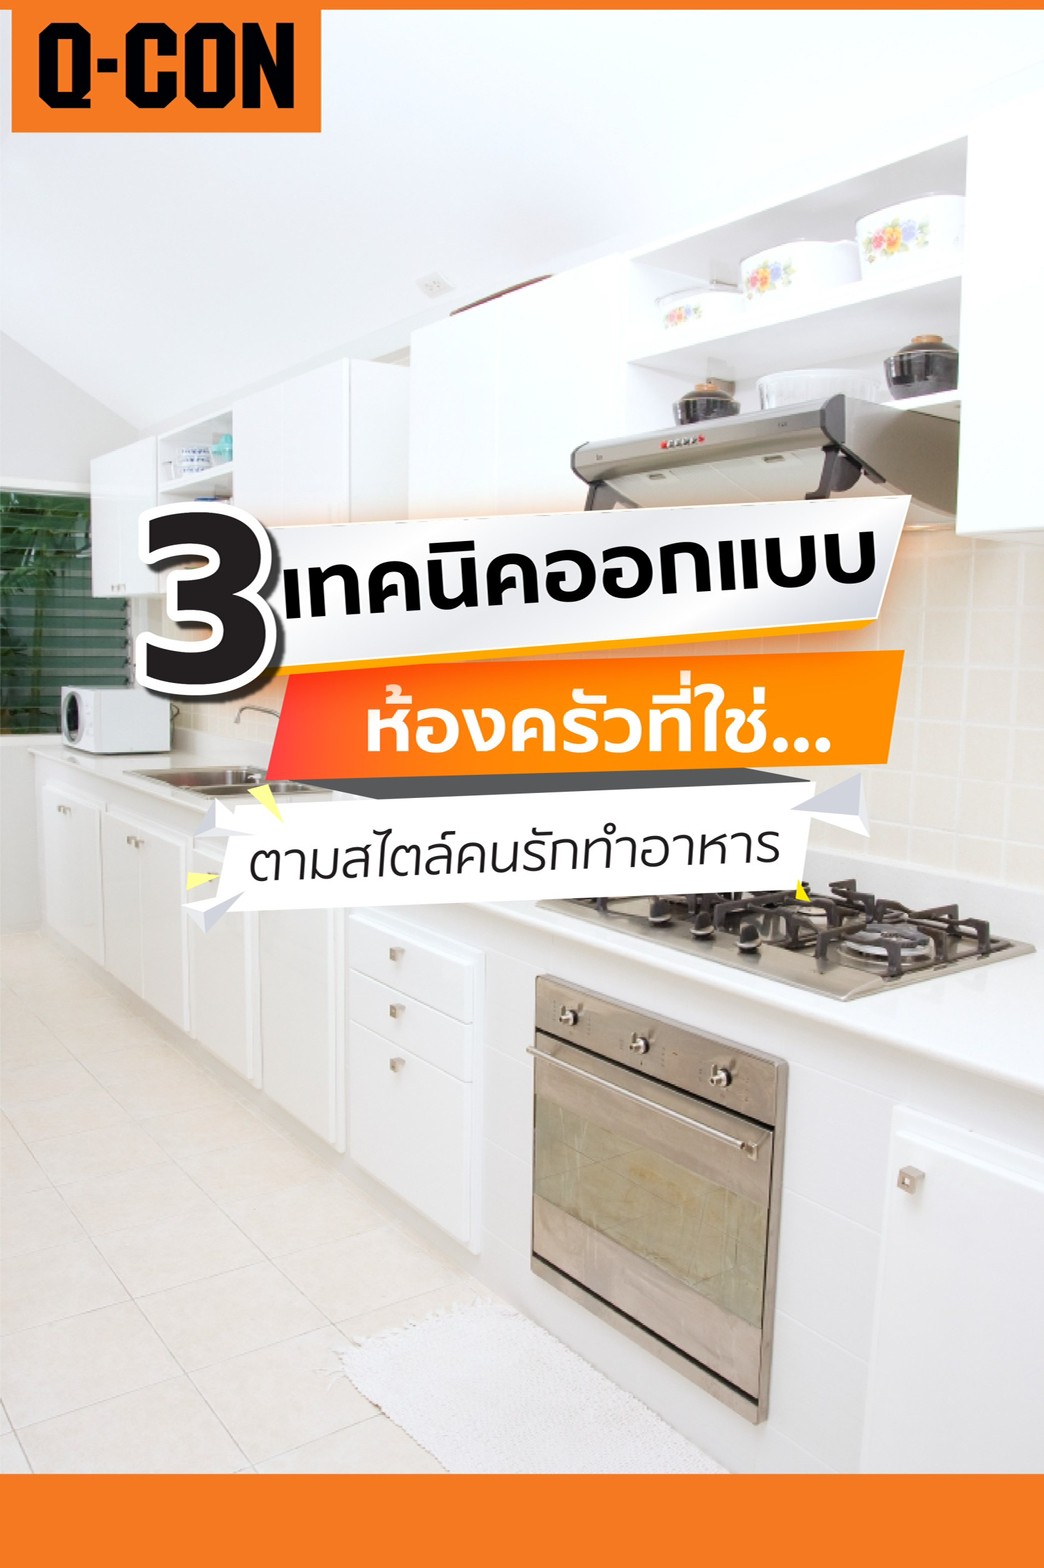 3 เทคนิคออกแบบห้องครัวที่ใช่ ตามสไตล์คนรักทำอาหาร